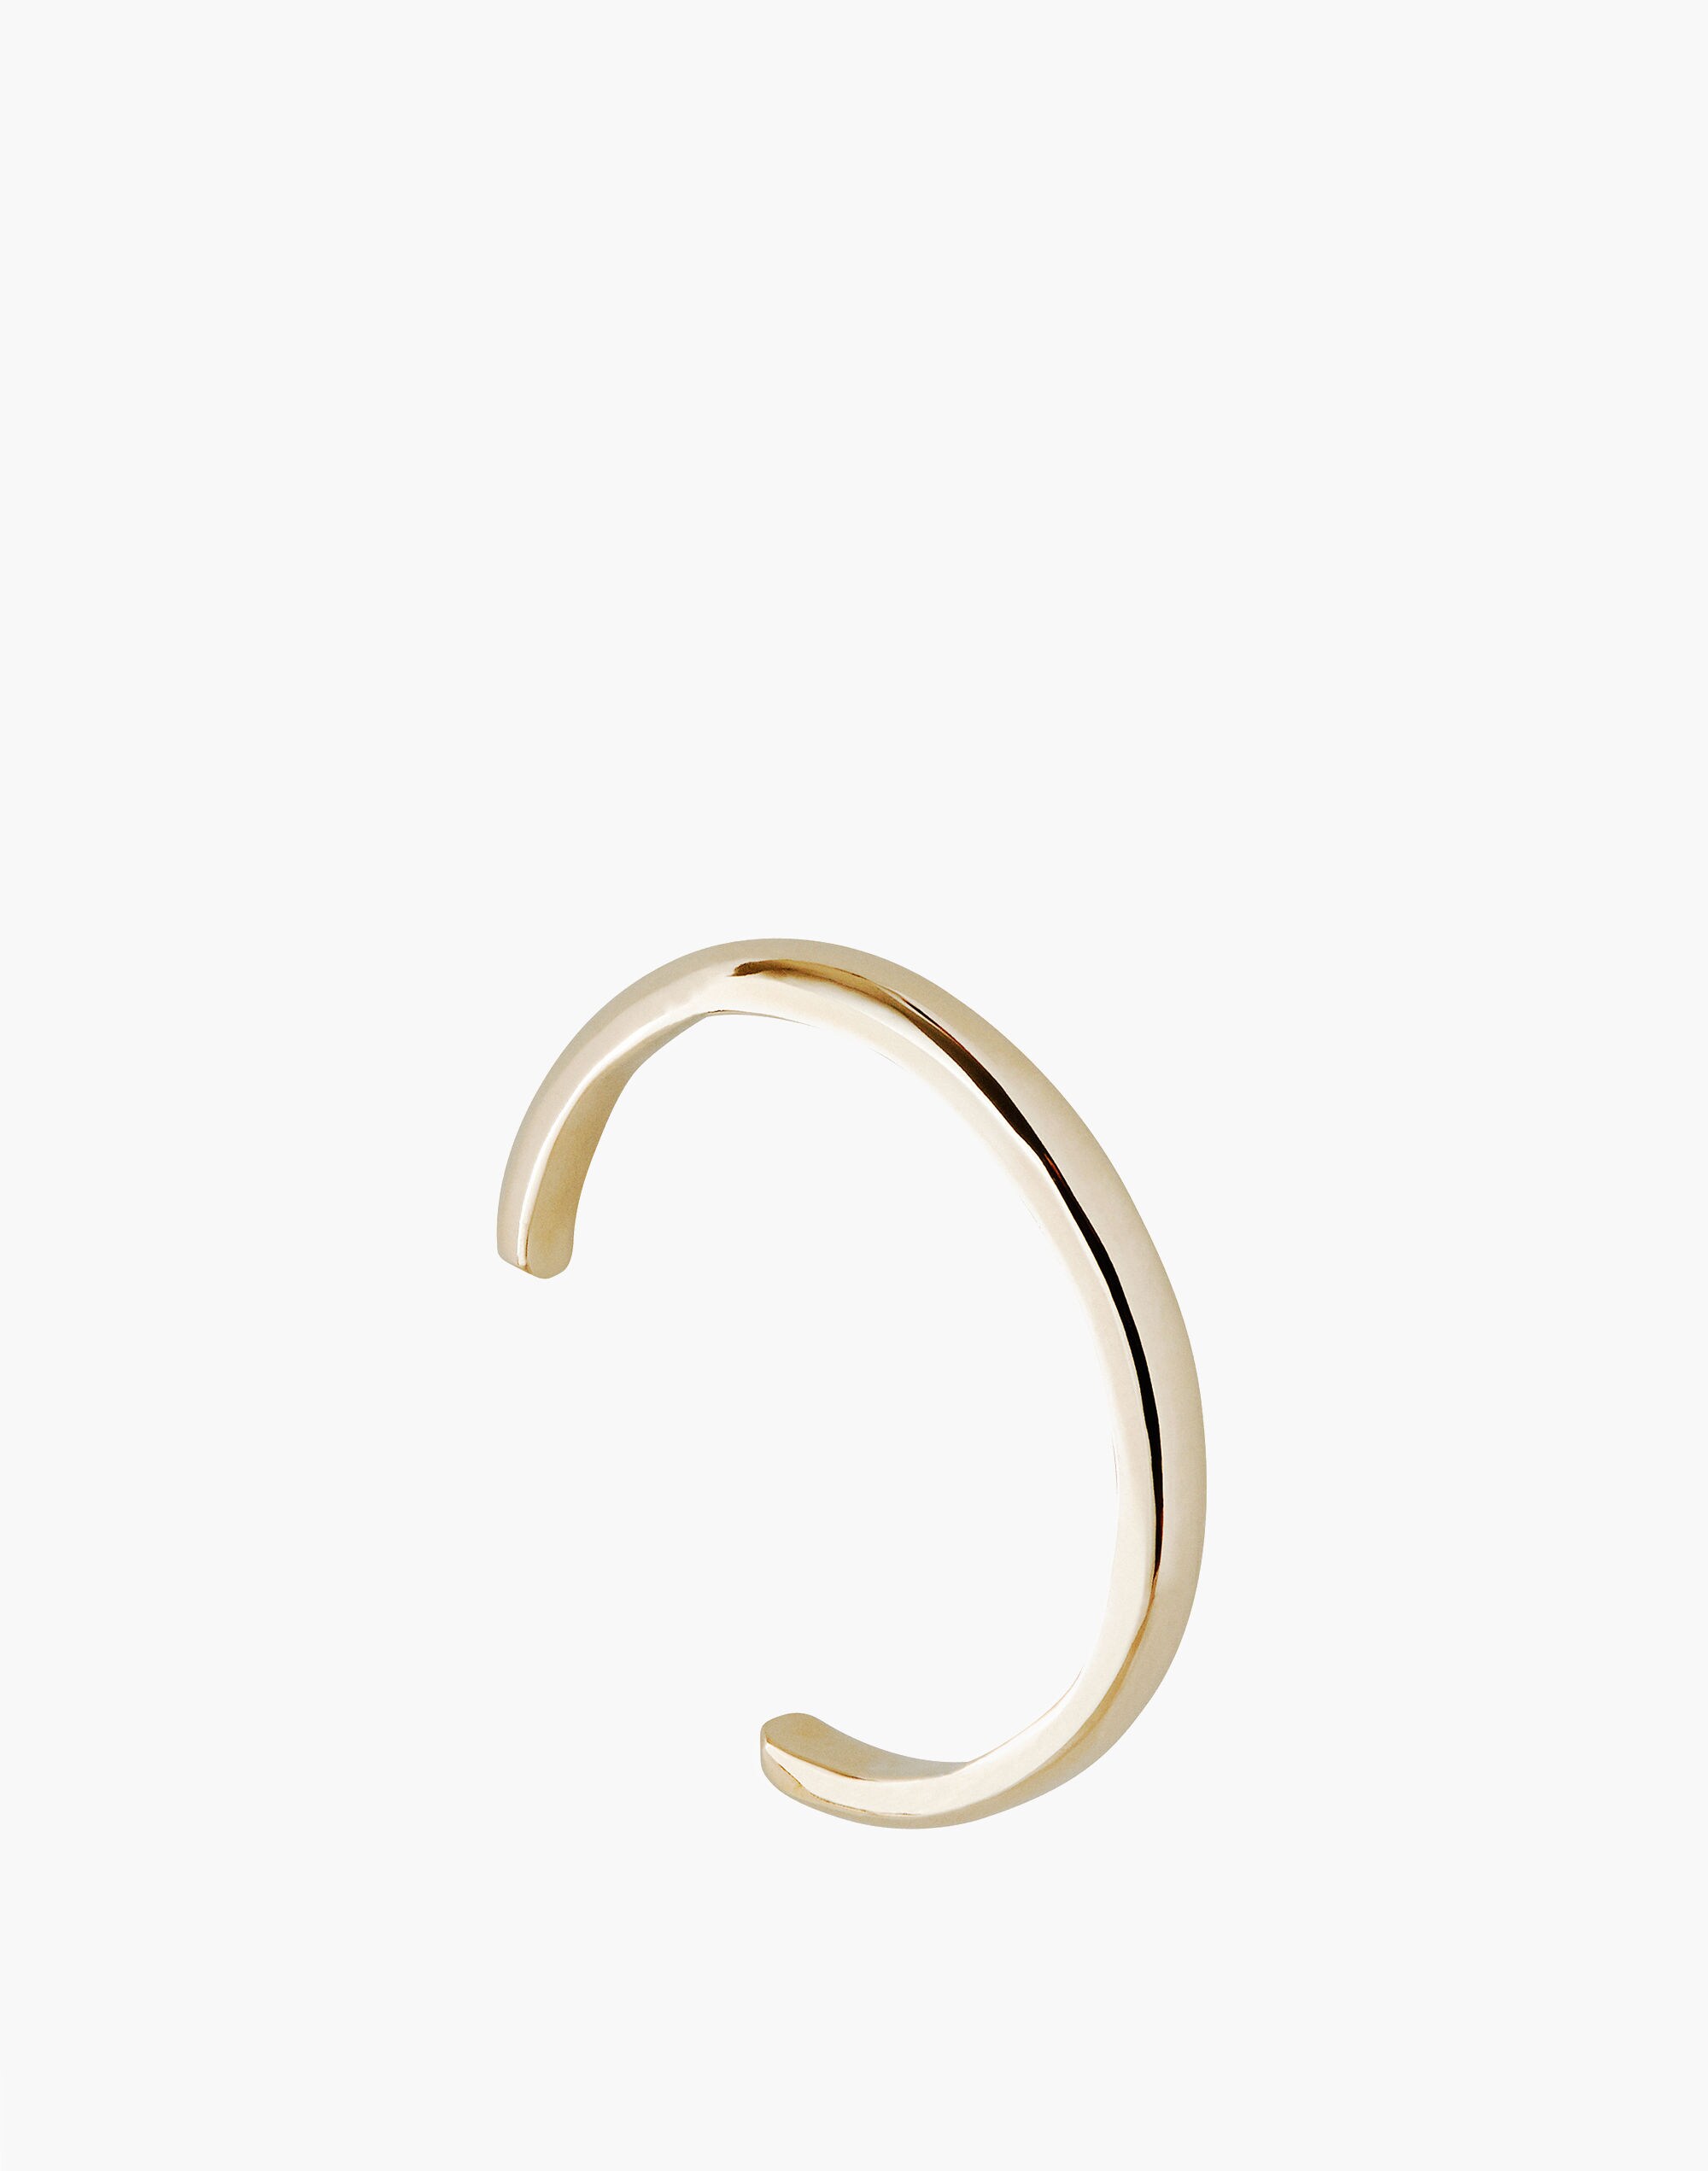 Charlotte Cauwe Studio Brass Round Cuff Bracelet